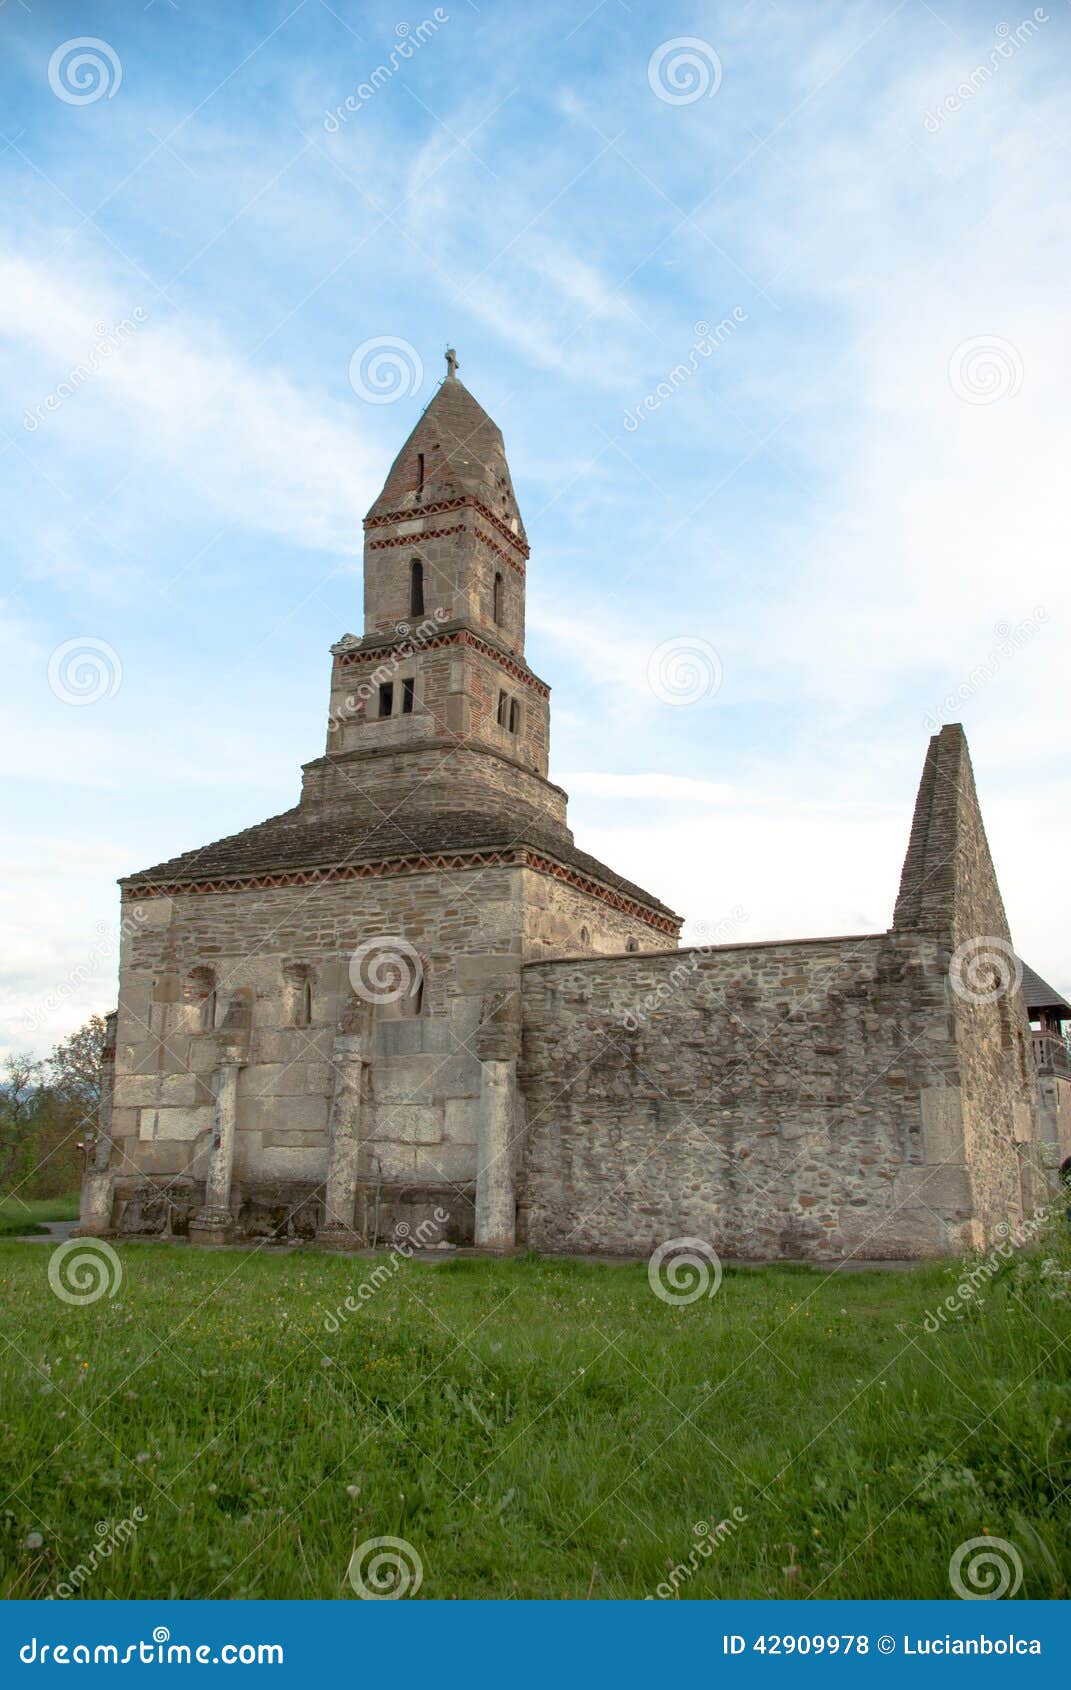 Densus - sehr alte Steinkirche in Siebenbürgen, Rumänien. Densus ist eins der ältesten Kirche in Rumänien, errichtet XIII im Jahrhundert mit den Steinen von römischem Sarmizegetusa